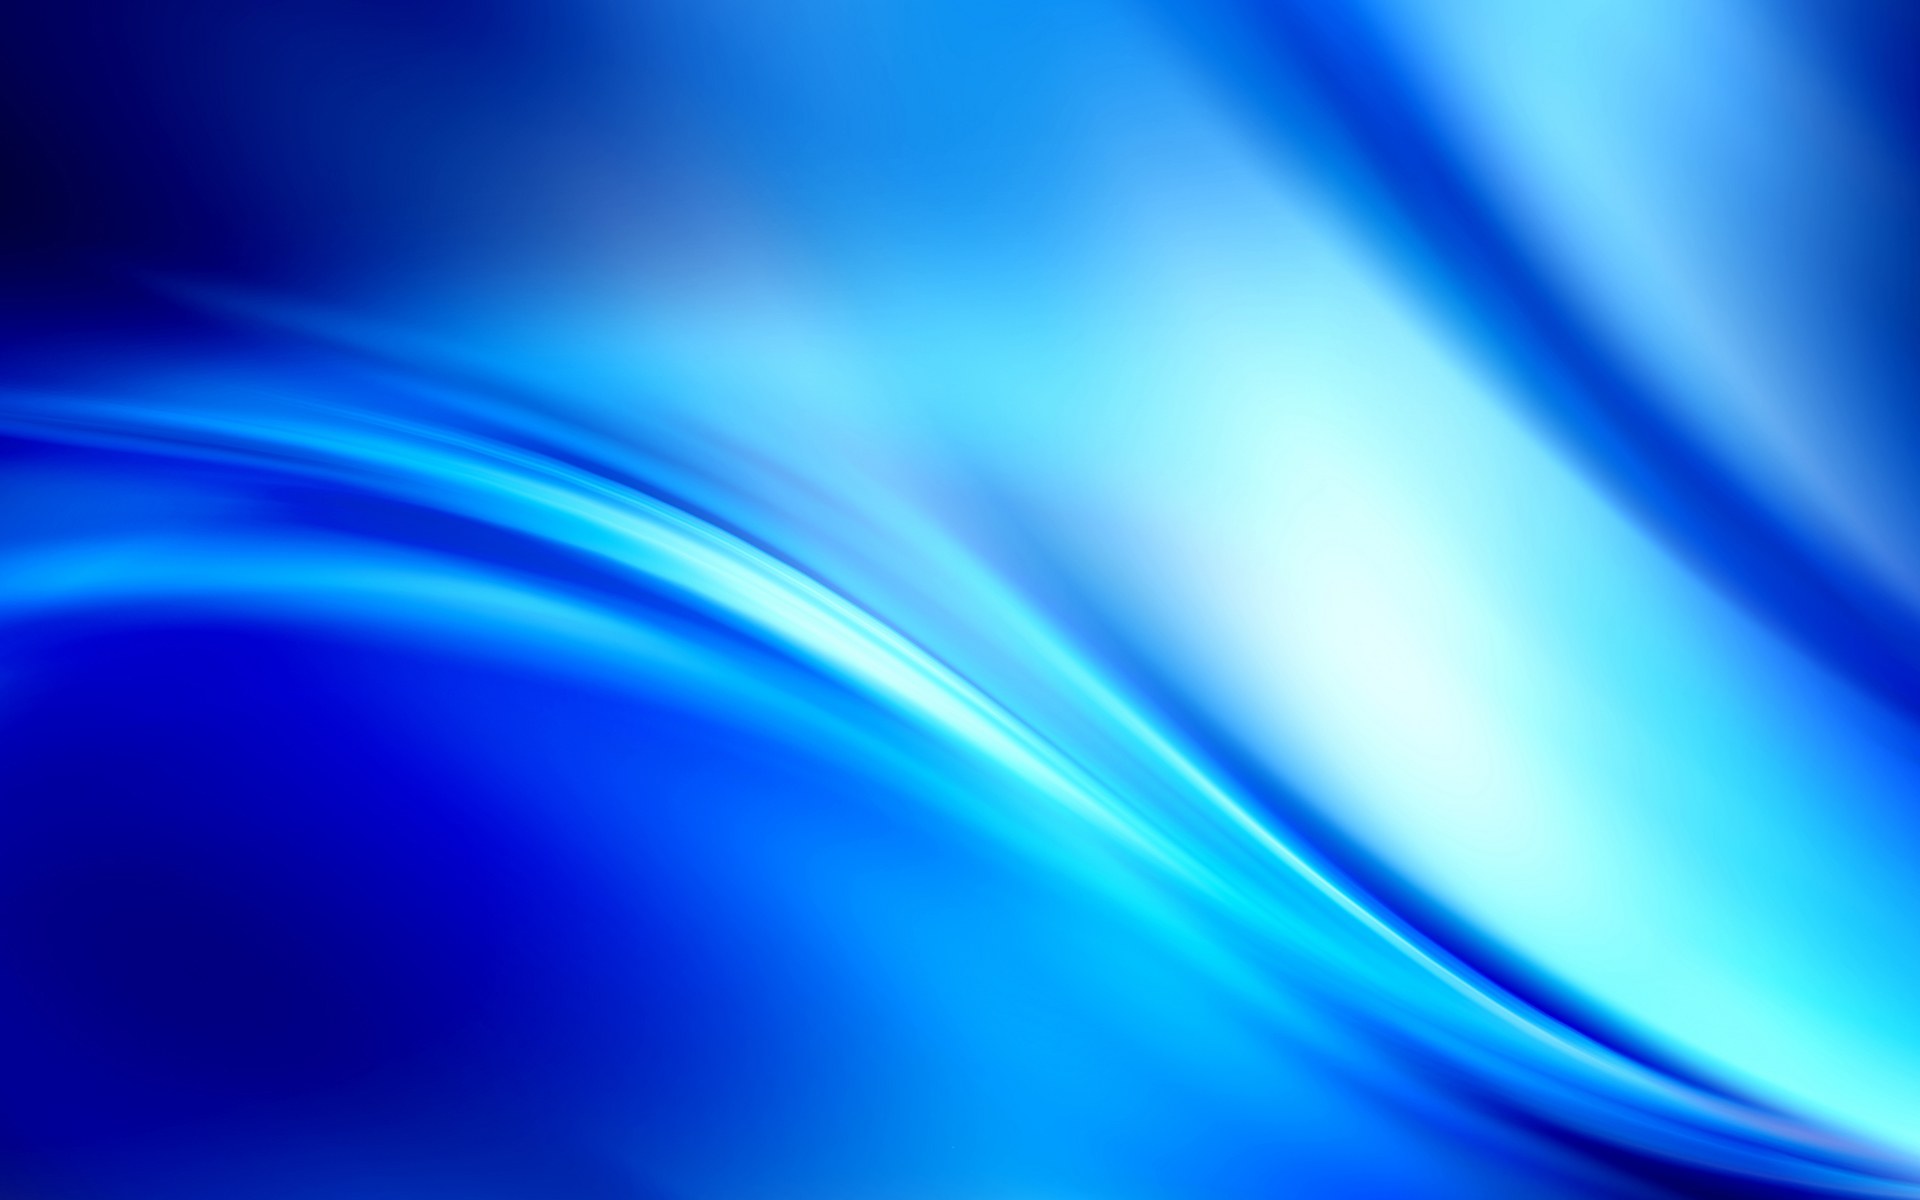 blaue abstrakte tapete,blau,elektrisches blau,aqua,kobaltblau,licht